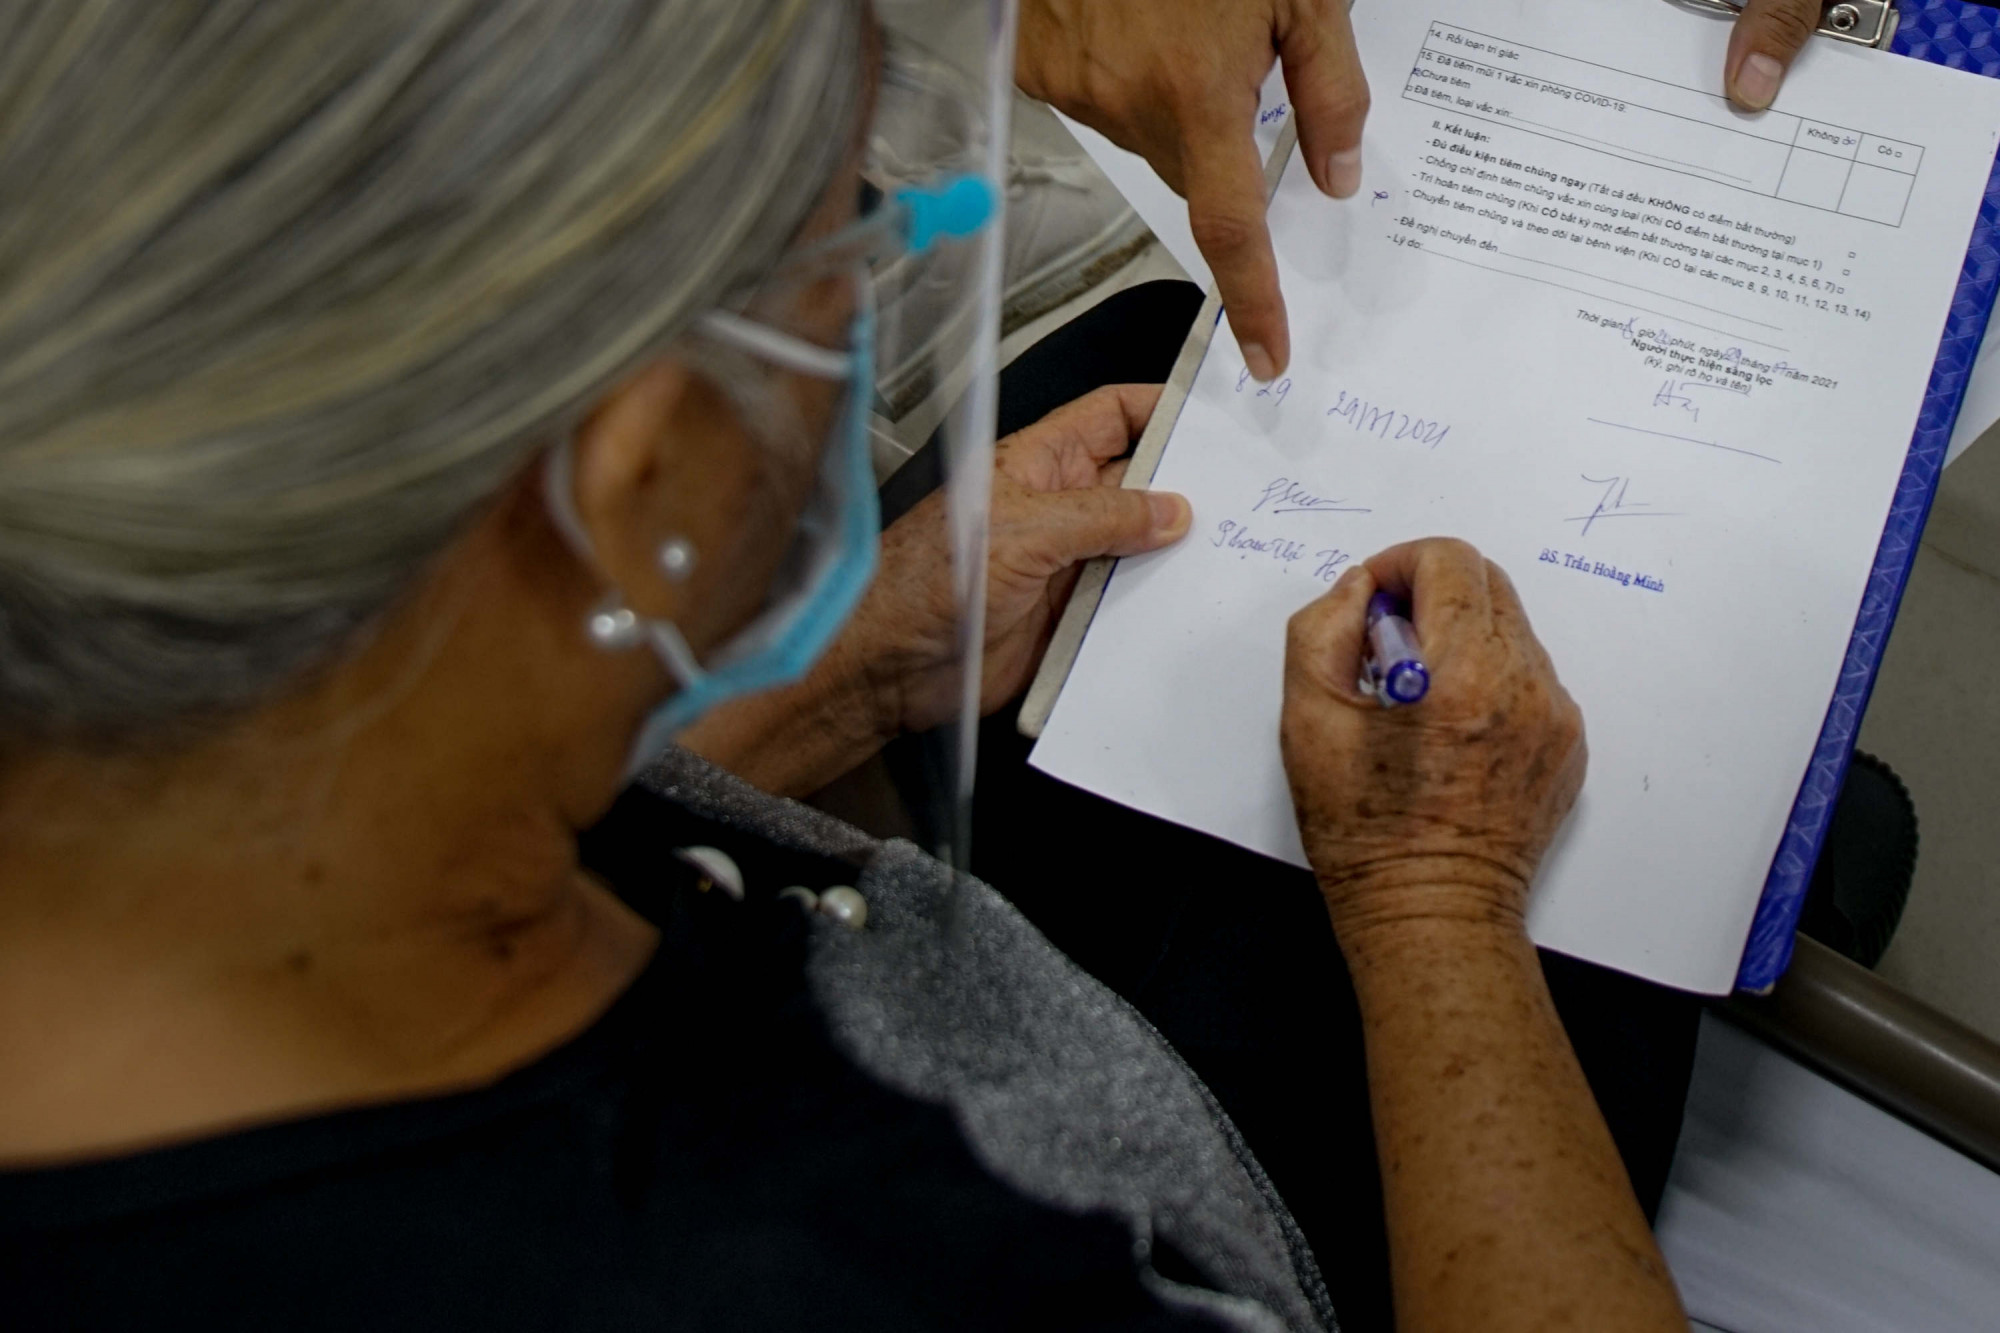 “Bác thấy ổn và khoẻ. Con thấy chữ ký đẹp không” - cụ bà 78 tuổi đùa vui lại với nhân viên y tế khi giao lại giấy ký nhận trước khi ra về.